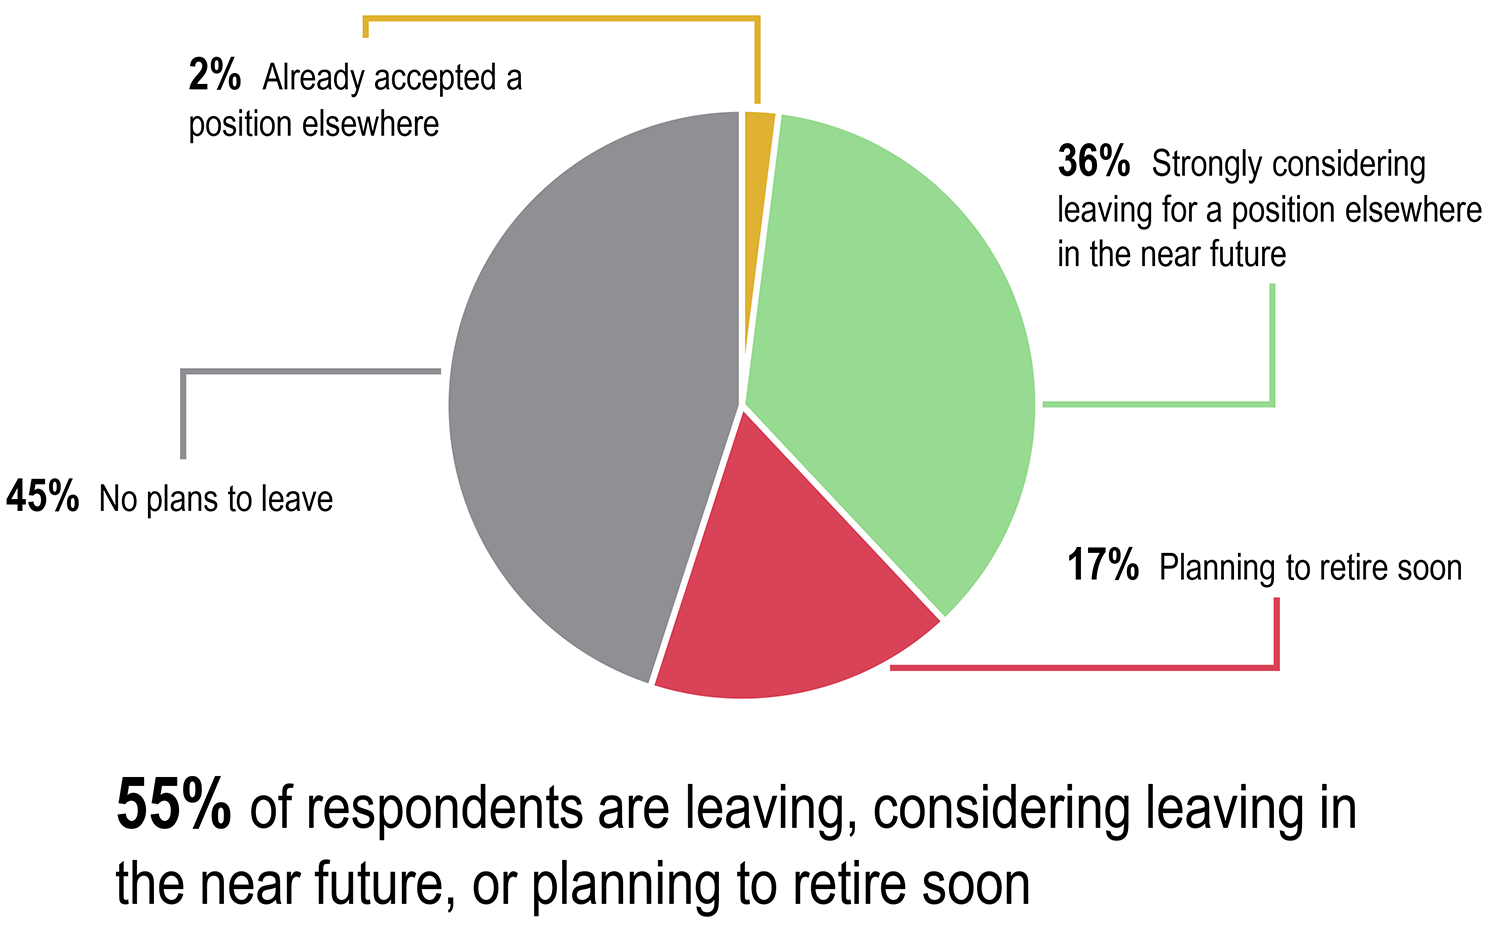 55%的受访者正在离职，考虑在不久的将来离职，或计划很快退休。饼状图:45%不打算离职;36%强烈考虑在不久的将来跳槽;17%的人计划很快退休;2%的人已经接受了其他公司的工作。